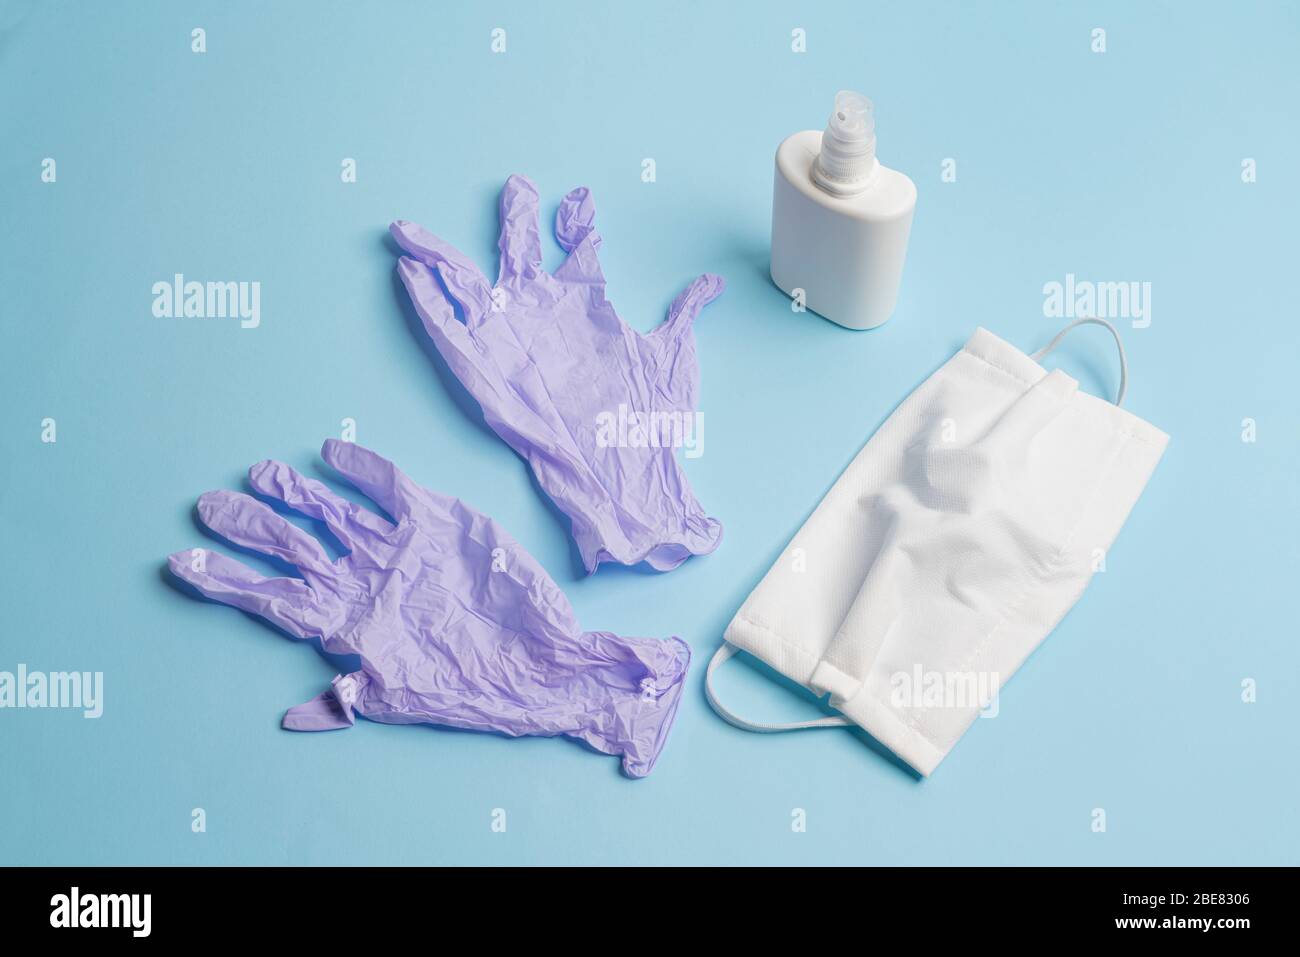 masques de protection, désinfectants et gants jetables en latex sur une surface colorée Banque D'Images